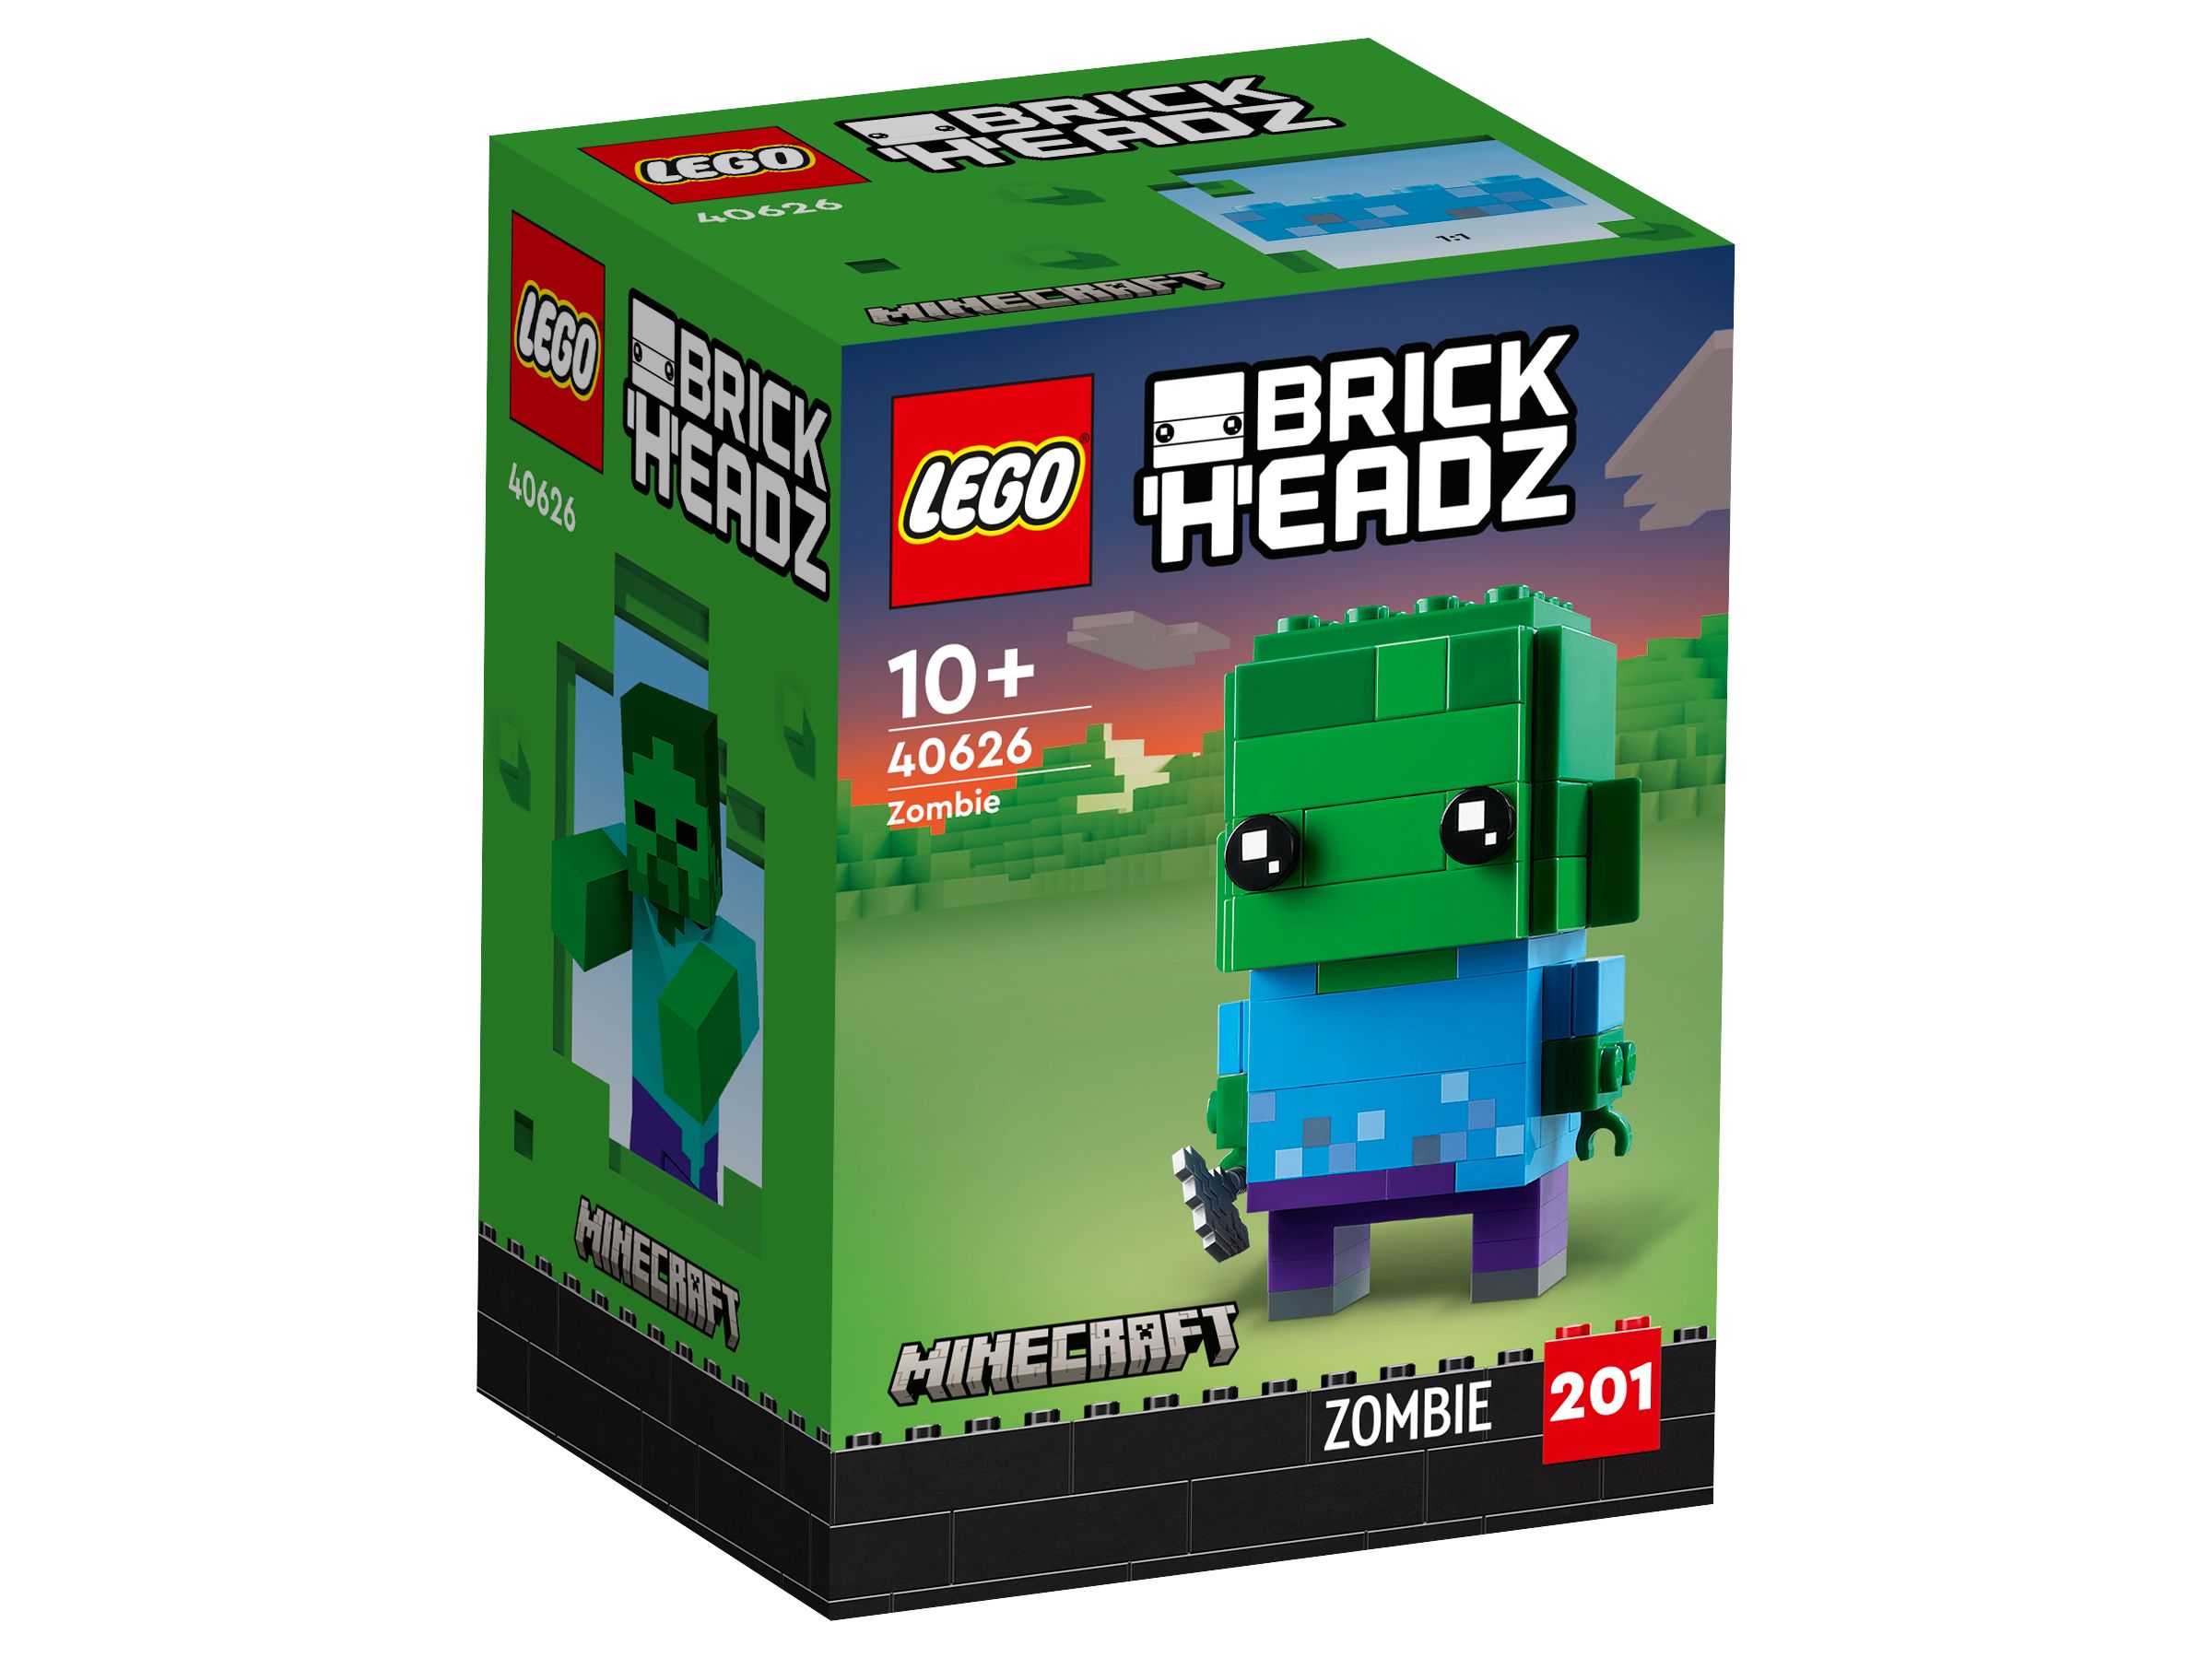 LEGO BrickHeadz 40626 Zombie LEGO_40626_Box1_v29.jpg